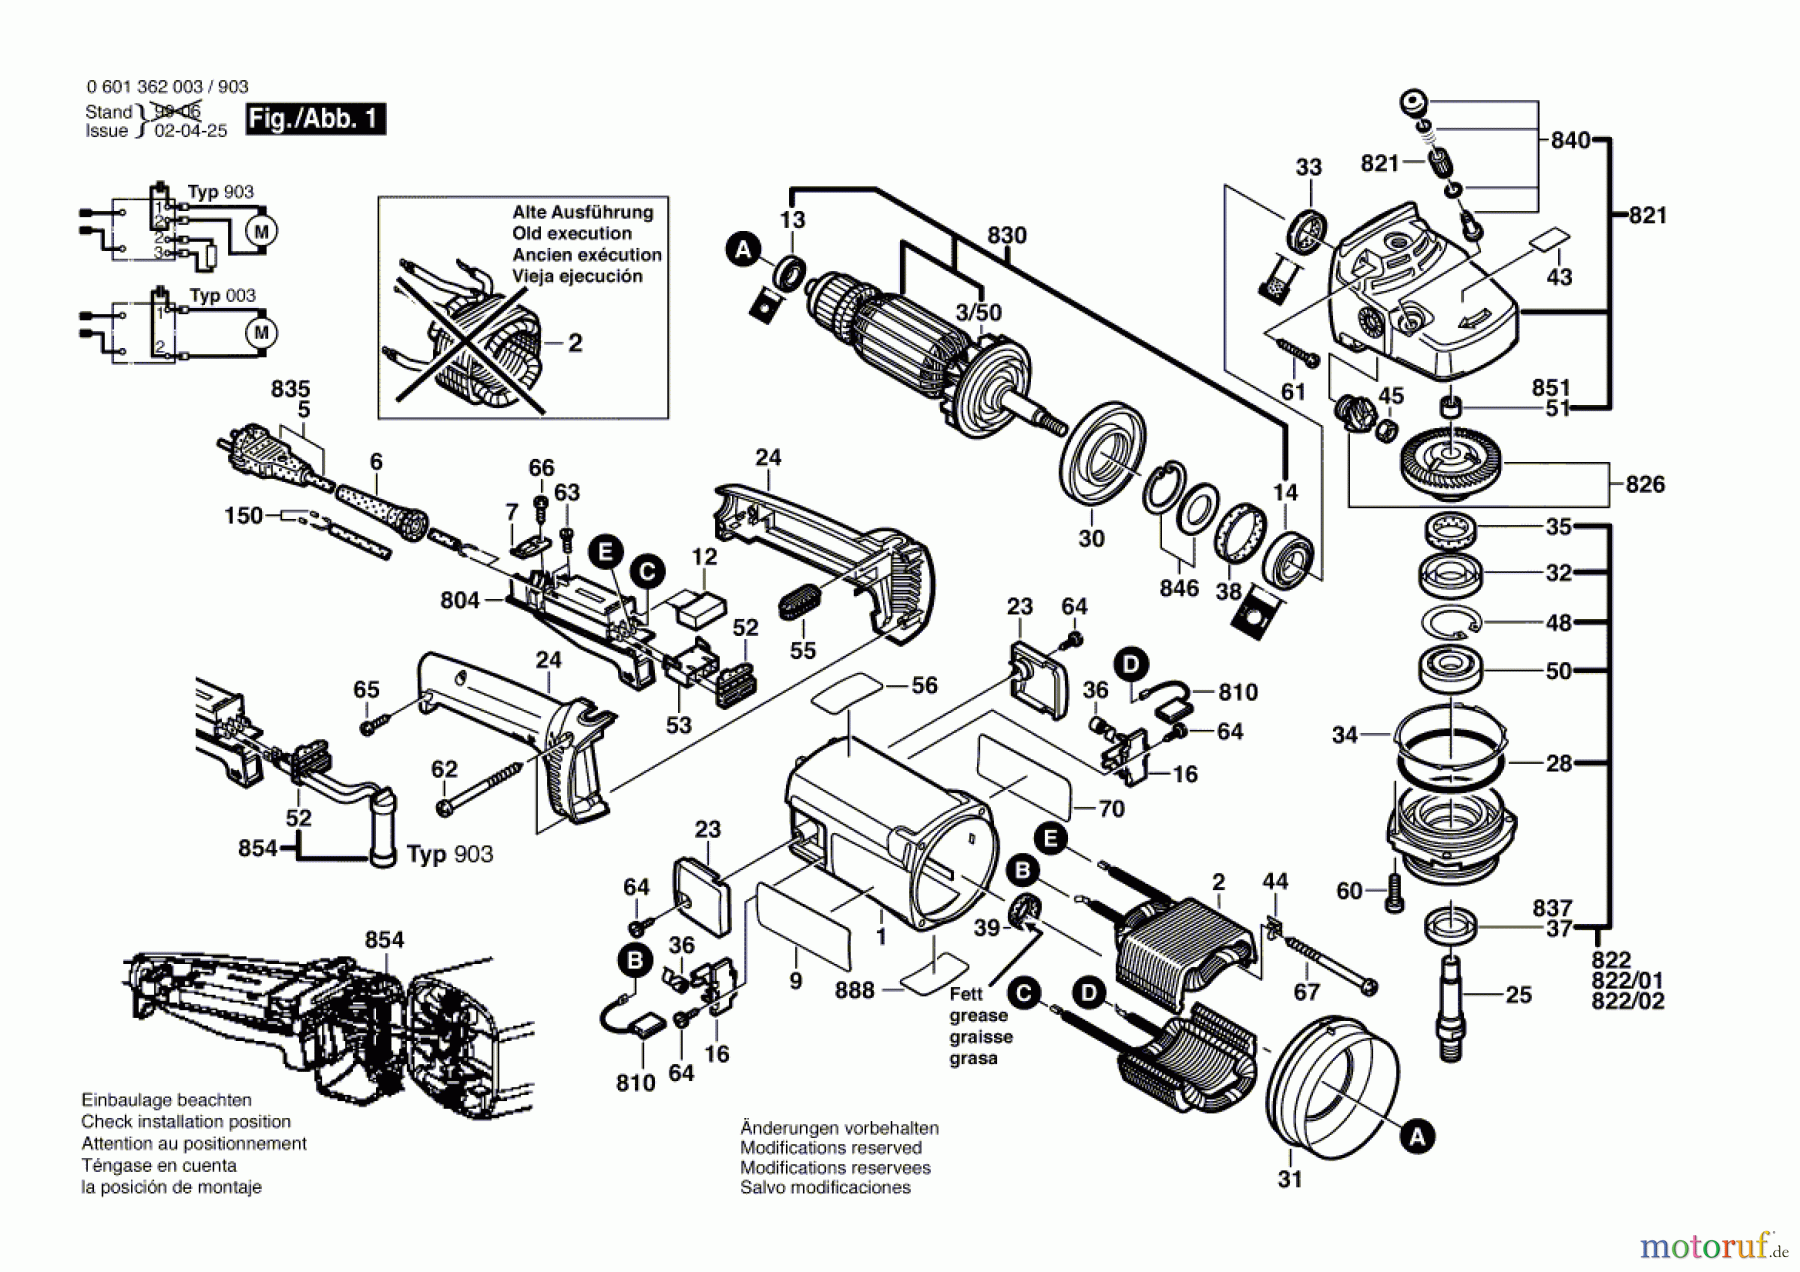  Bosch Werkzeug Winkelschleifer GWS 23-230 Seite 1